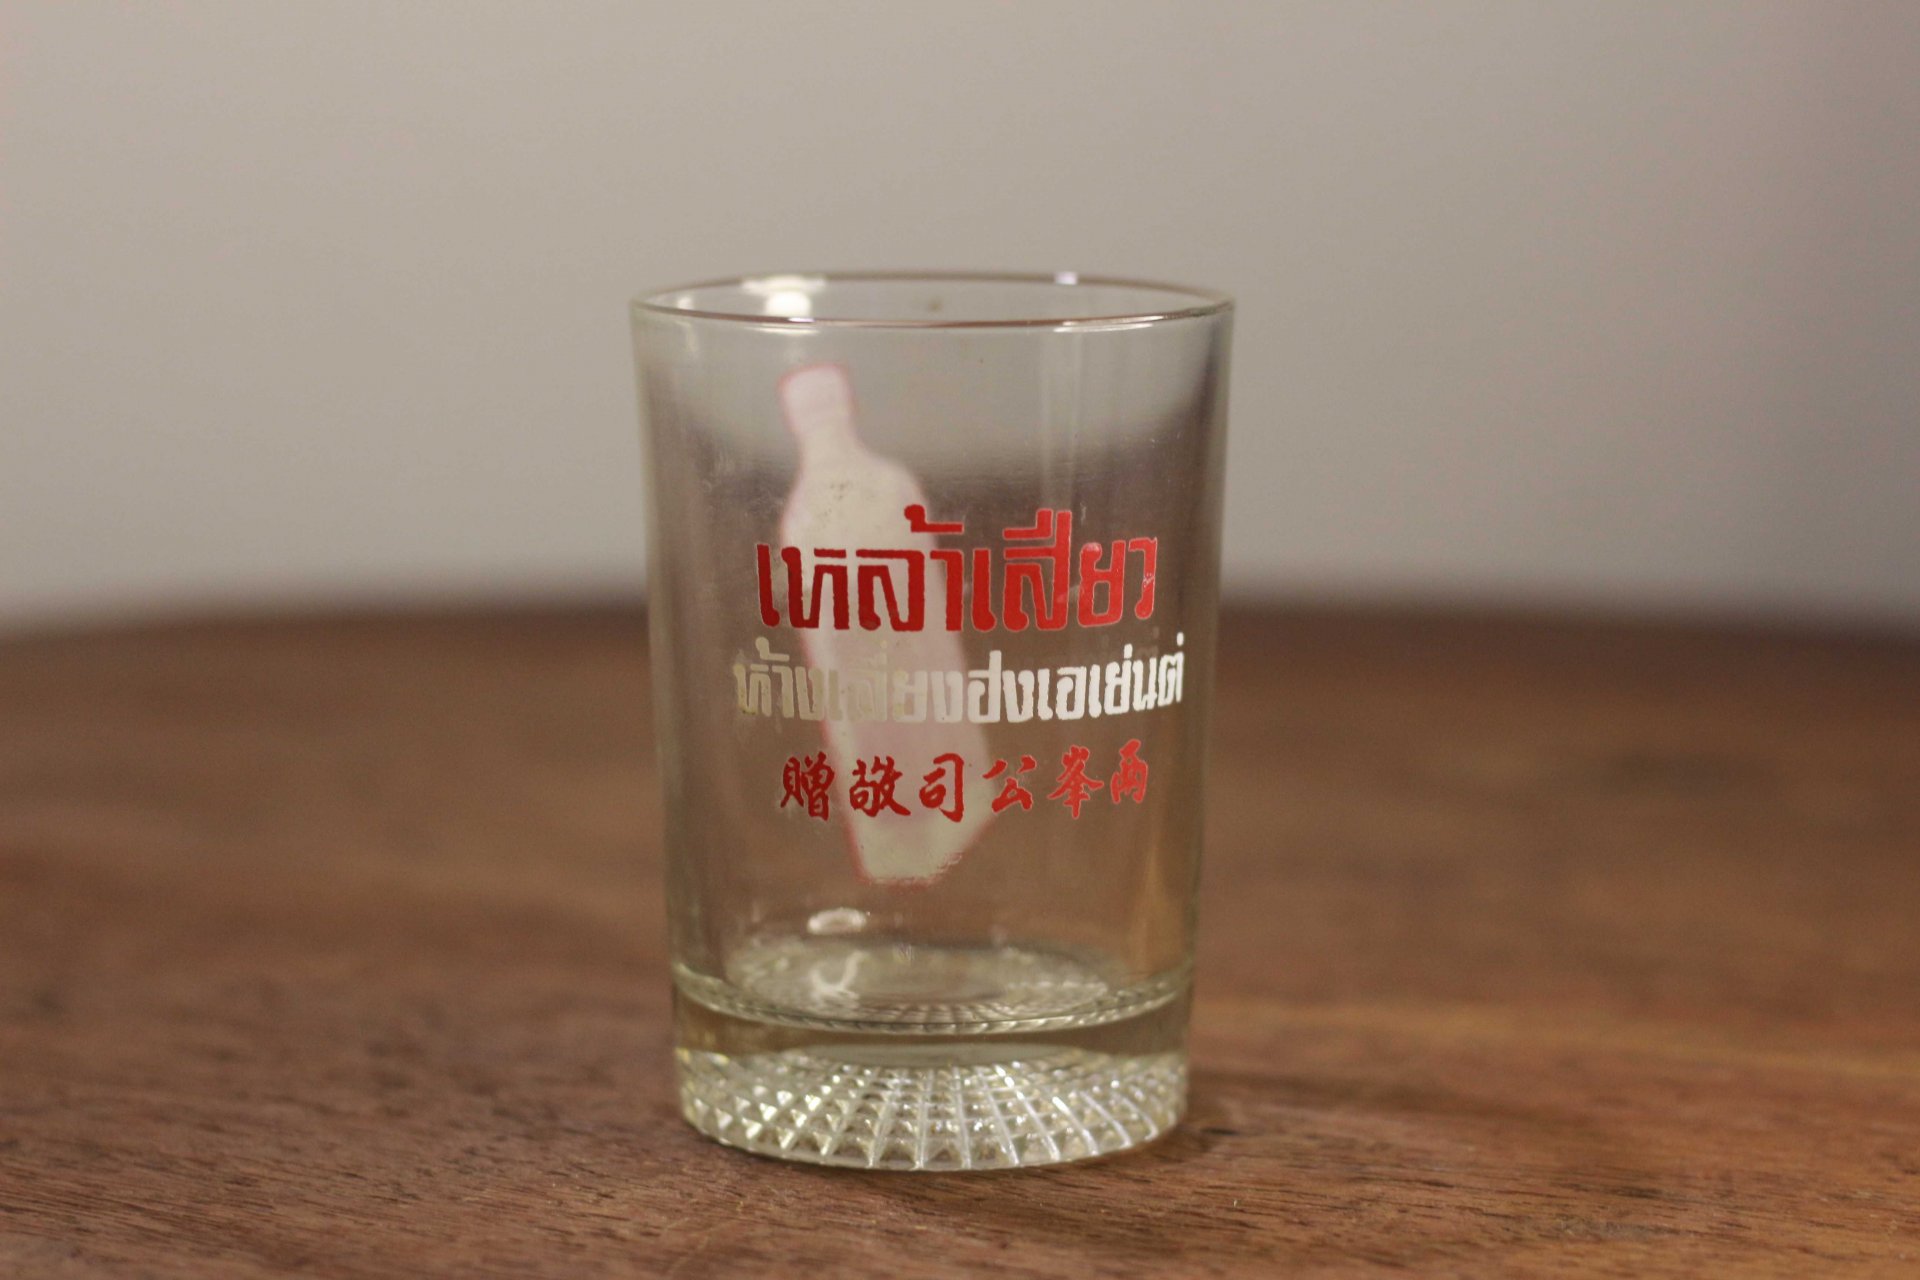 แก้วของแถม เหล้าจีน “เสียว” ยุค พ.ศ. 2520